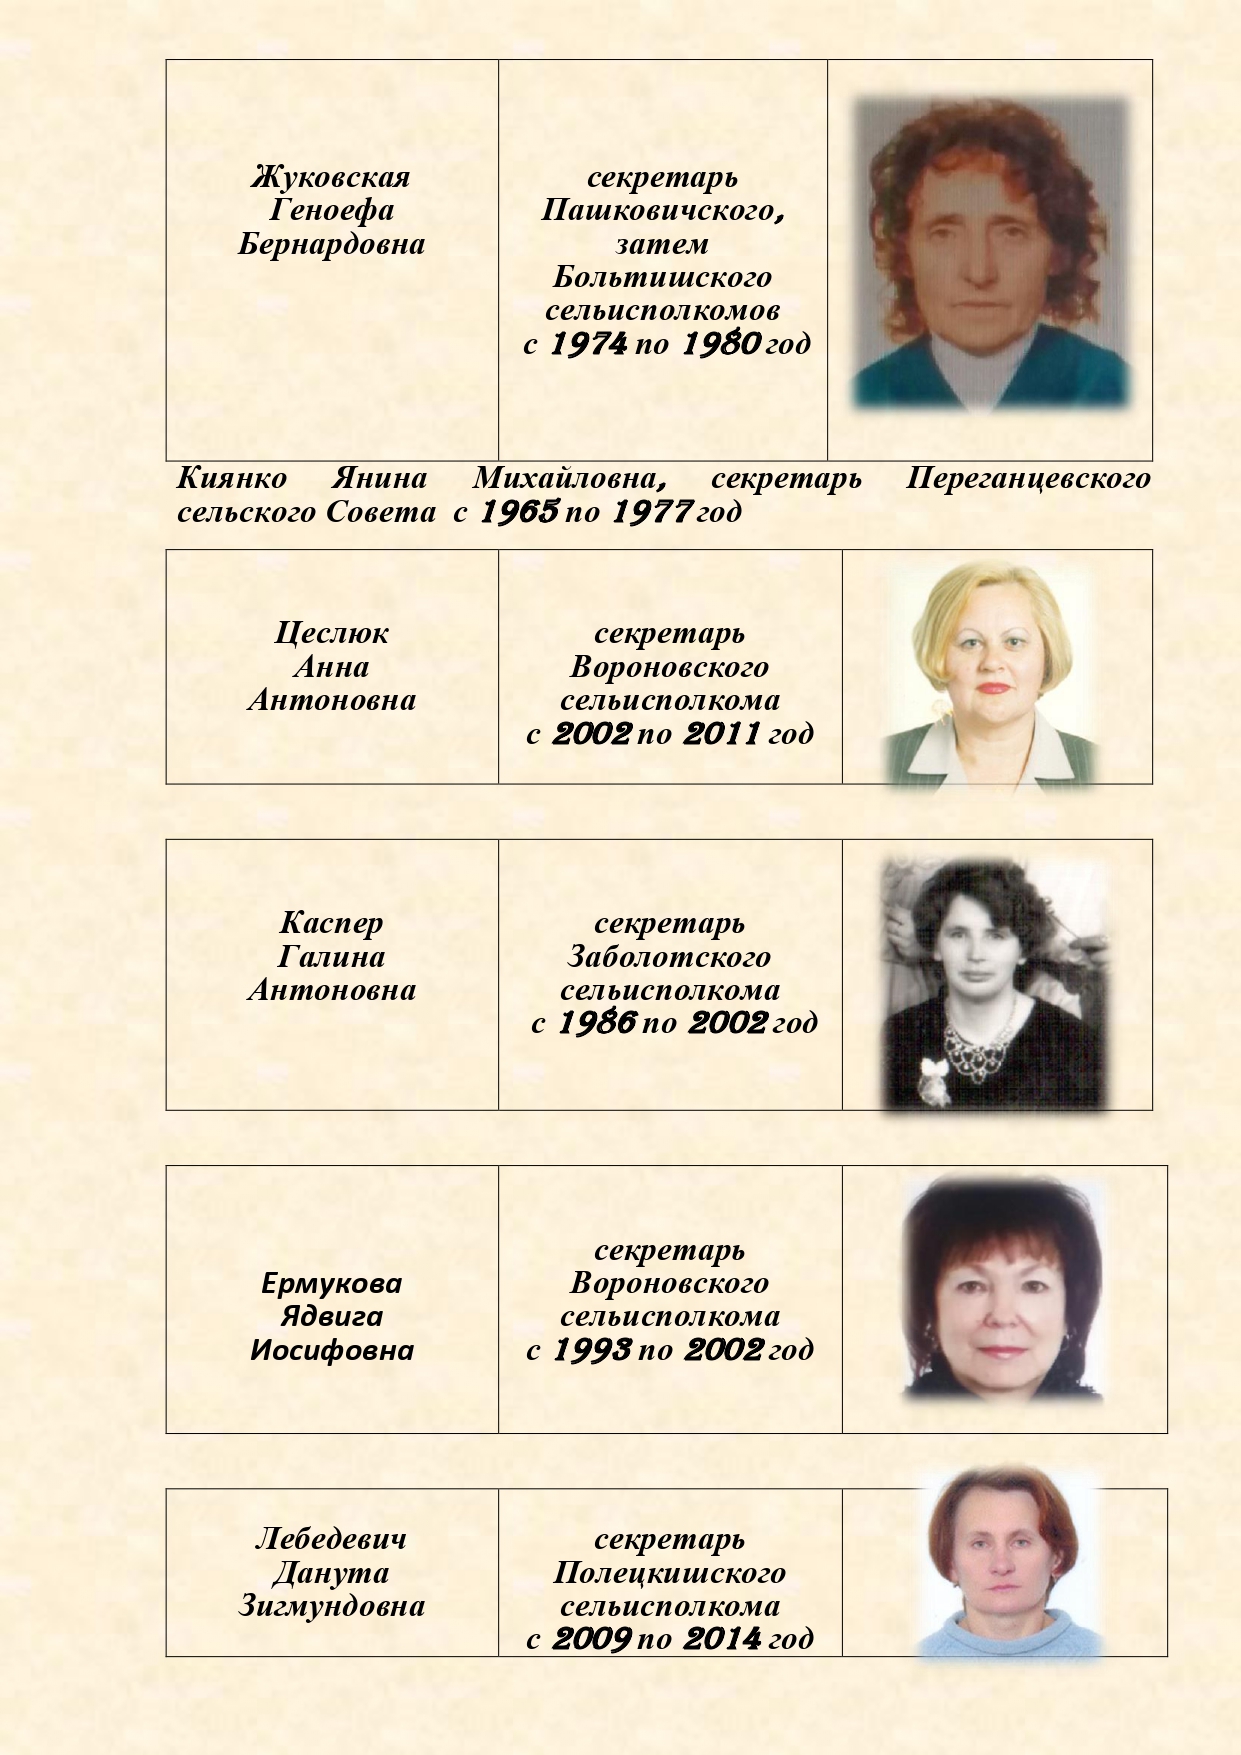 История органов загса Вороновского района с изменениями (1)_page-0010.jpg